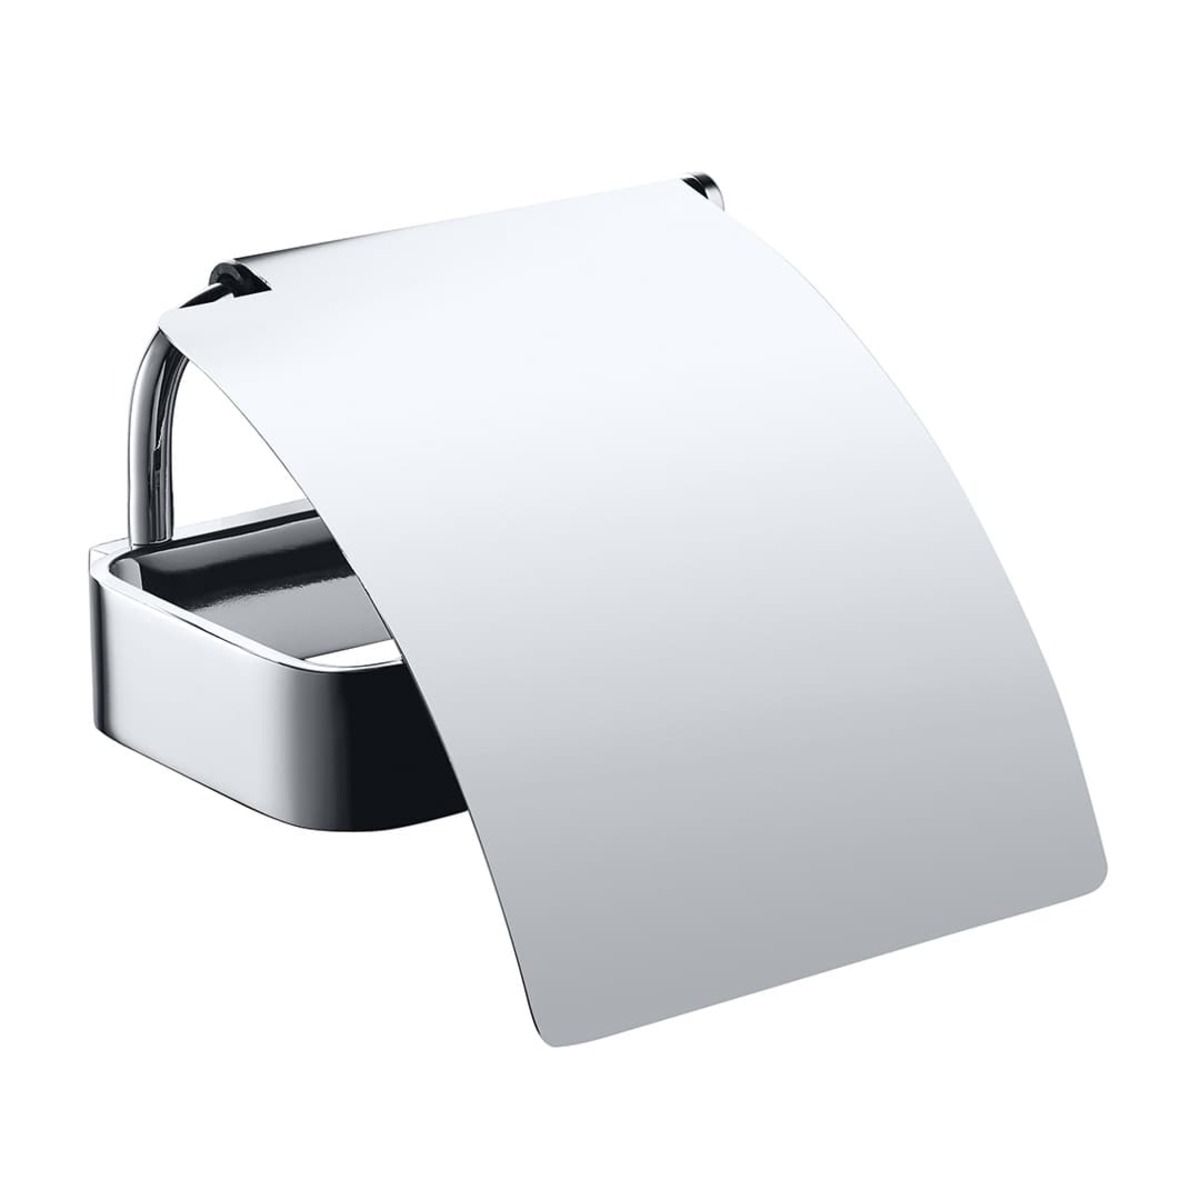 Držák toaletního papíru Bemeta Solo s krytem chrom 139112012 - Siko - koupelny - kuchyně